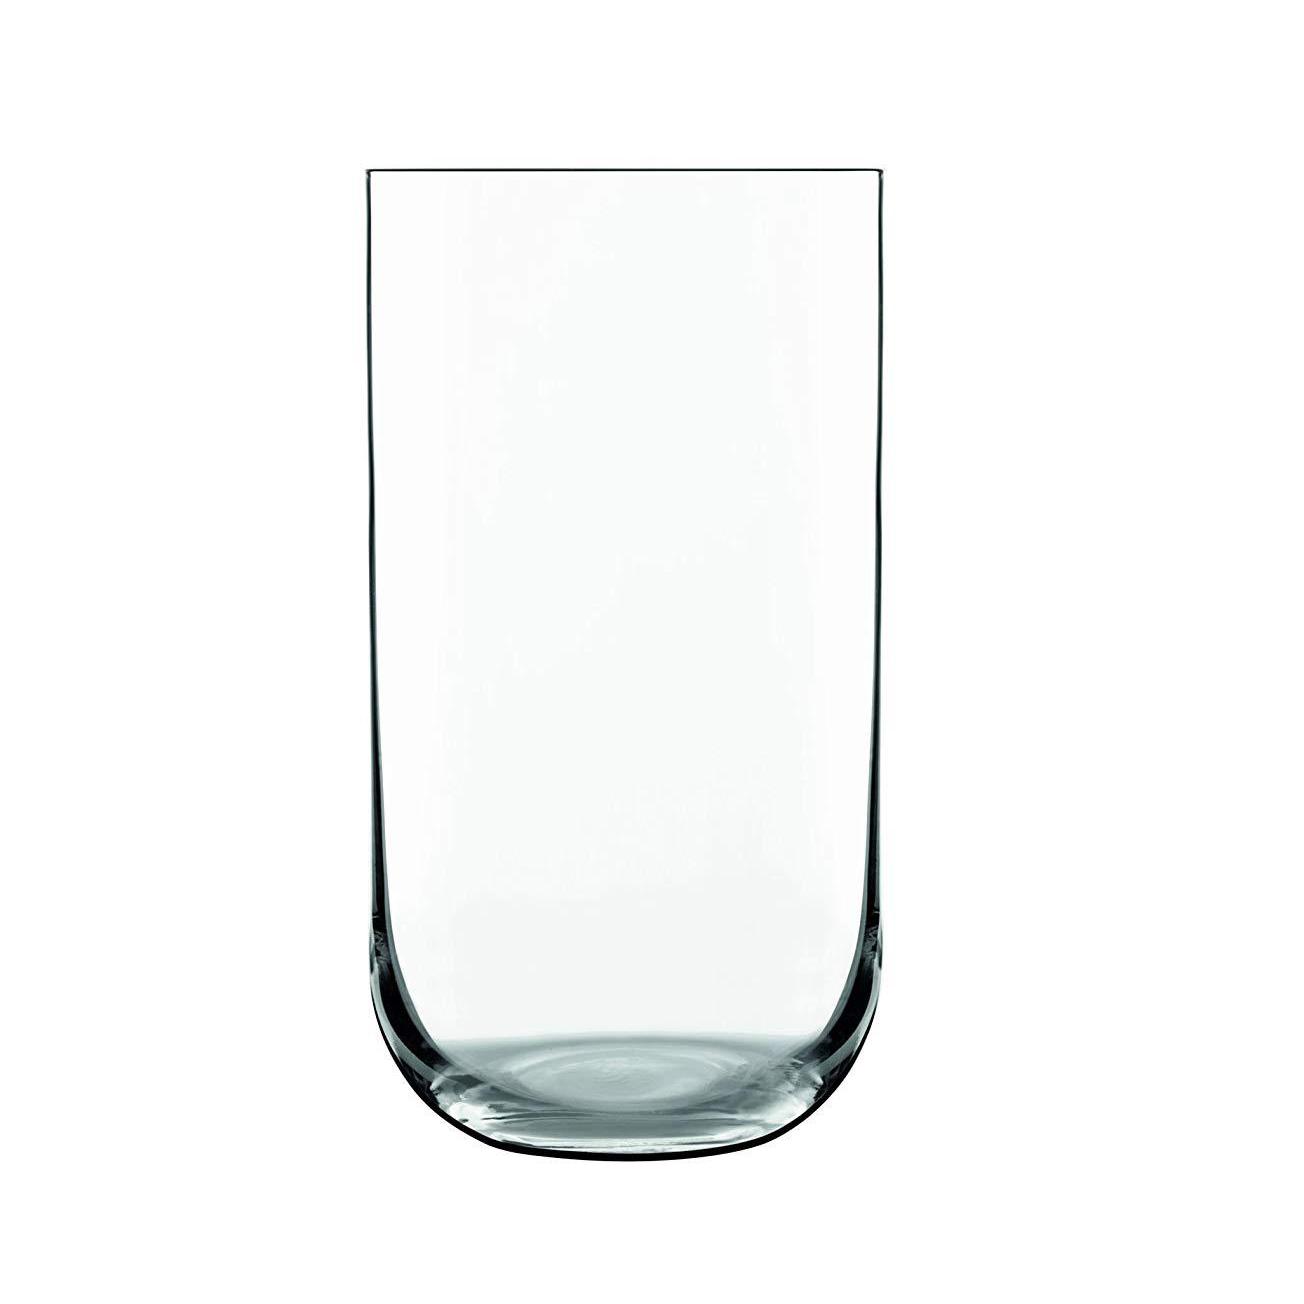 Sublime Beverage Glasses 20oz | Set of 4